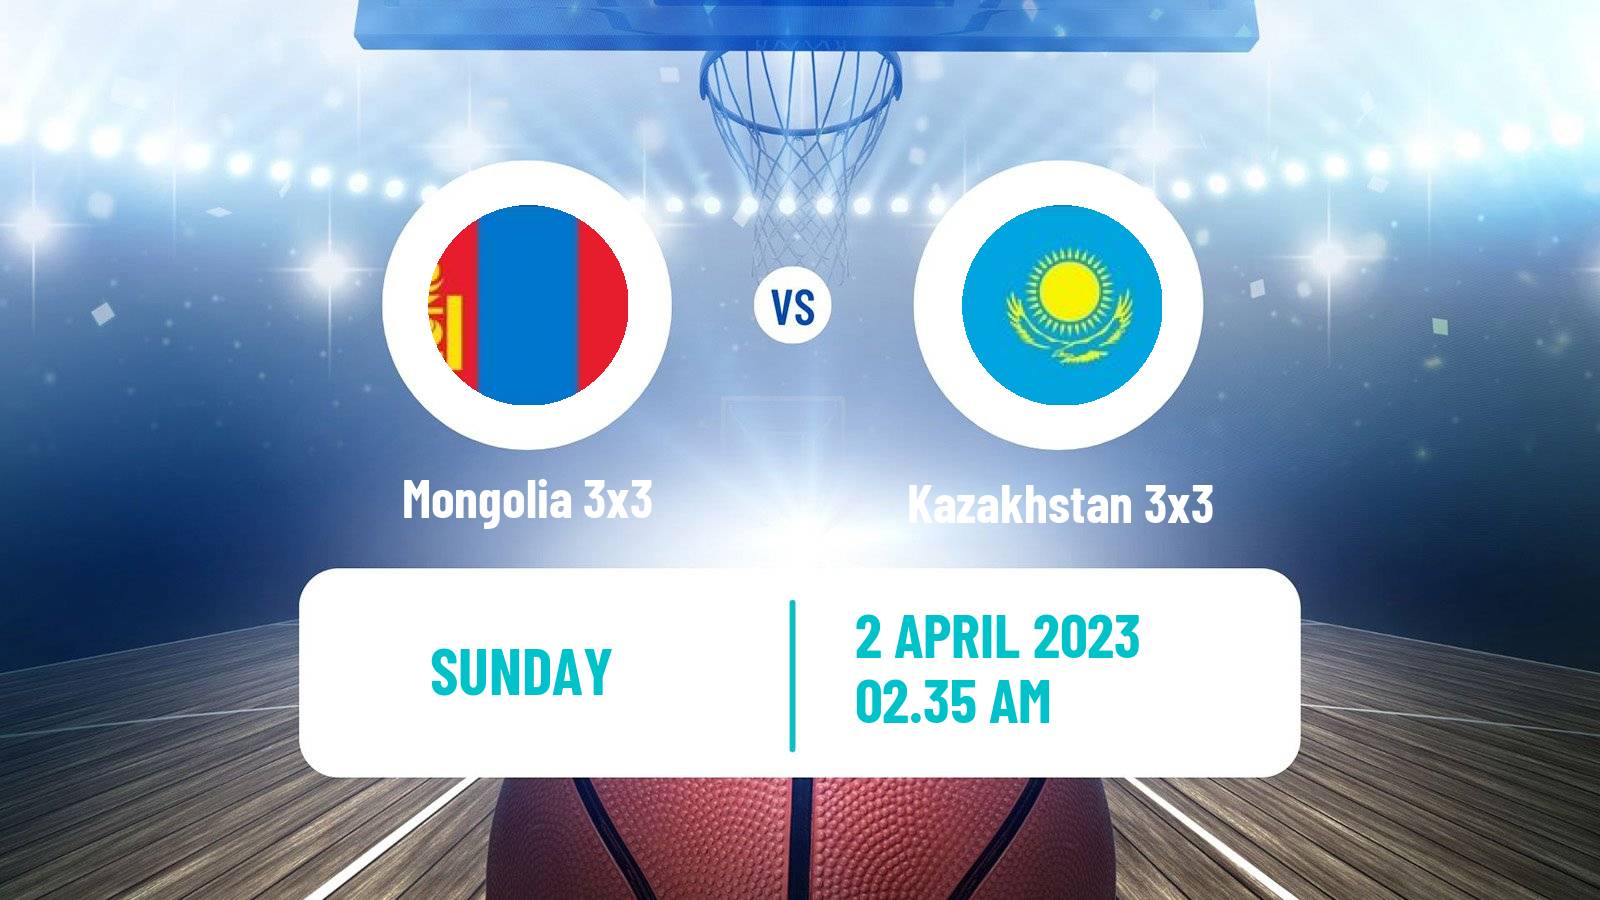 Basketball Asia Cup 3x3 Mongolia 3x3 - Kazakhstan 3x3